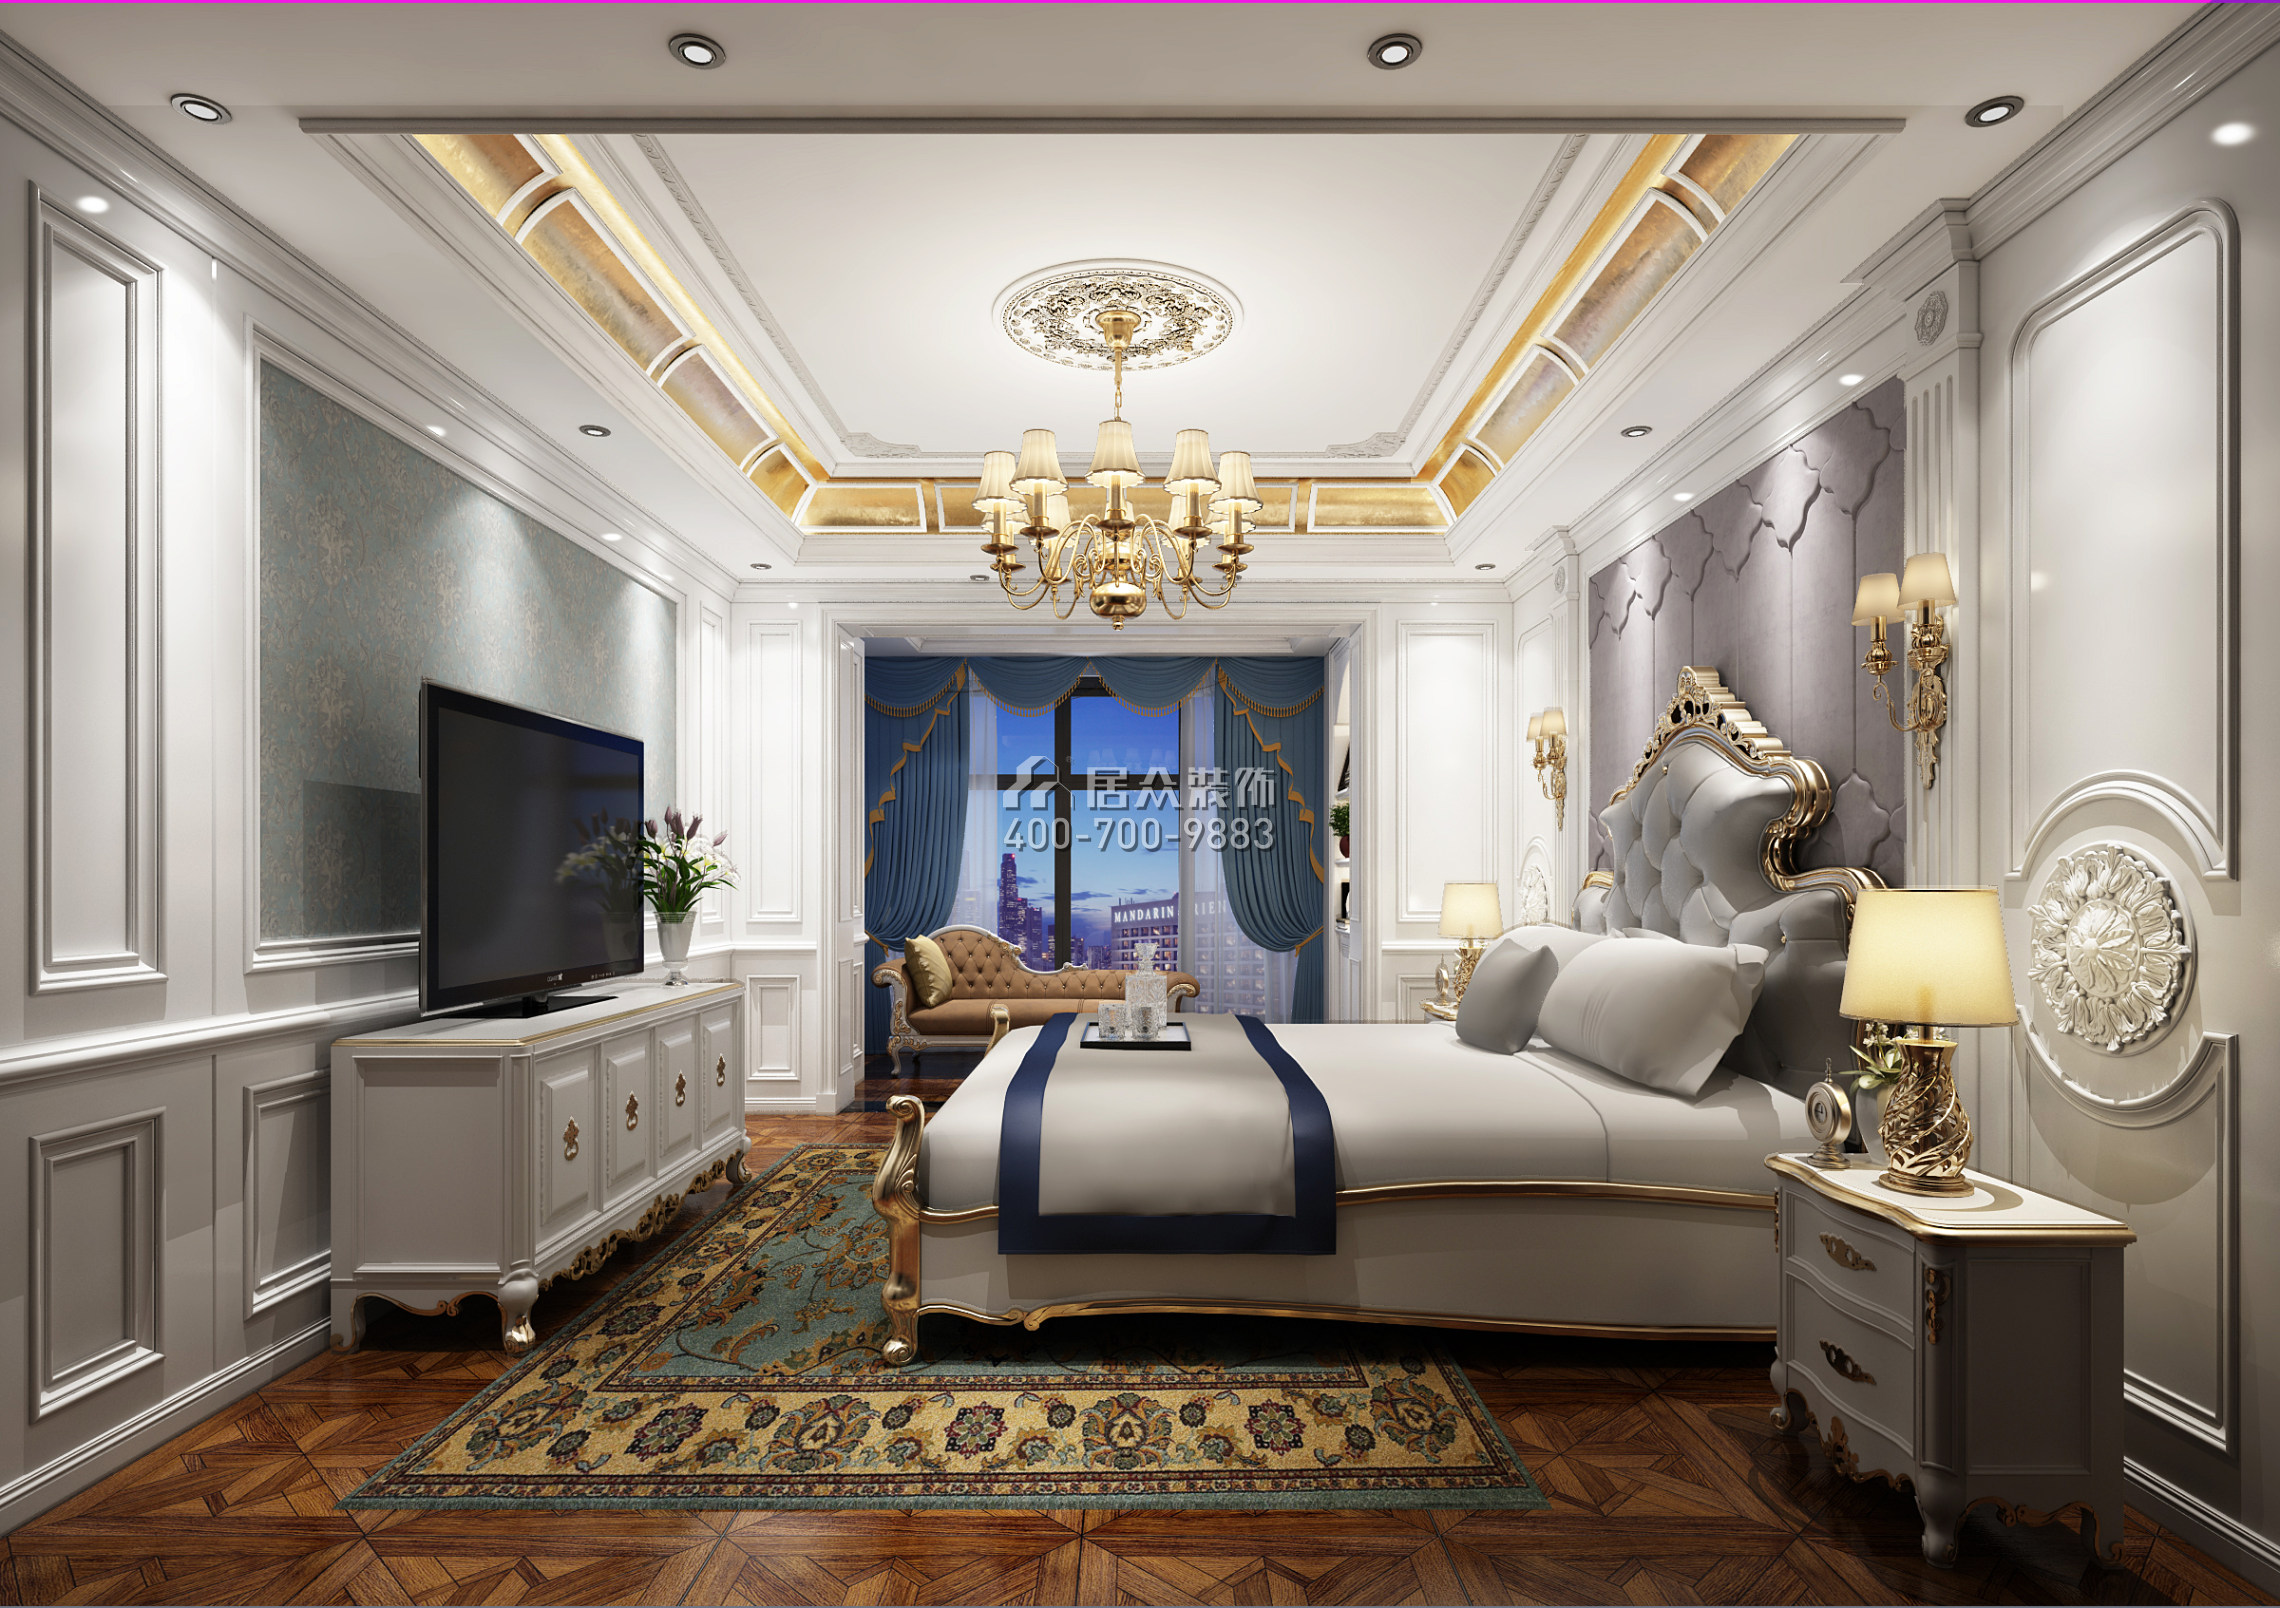 中洲中央公园二期289平方米欧式风格平层户型卧室装修效果图